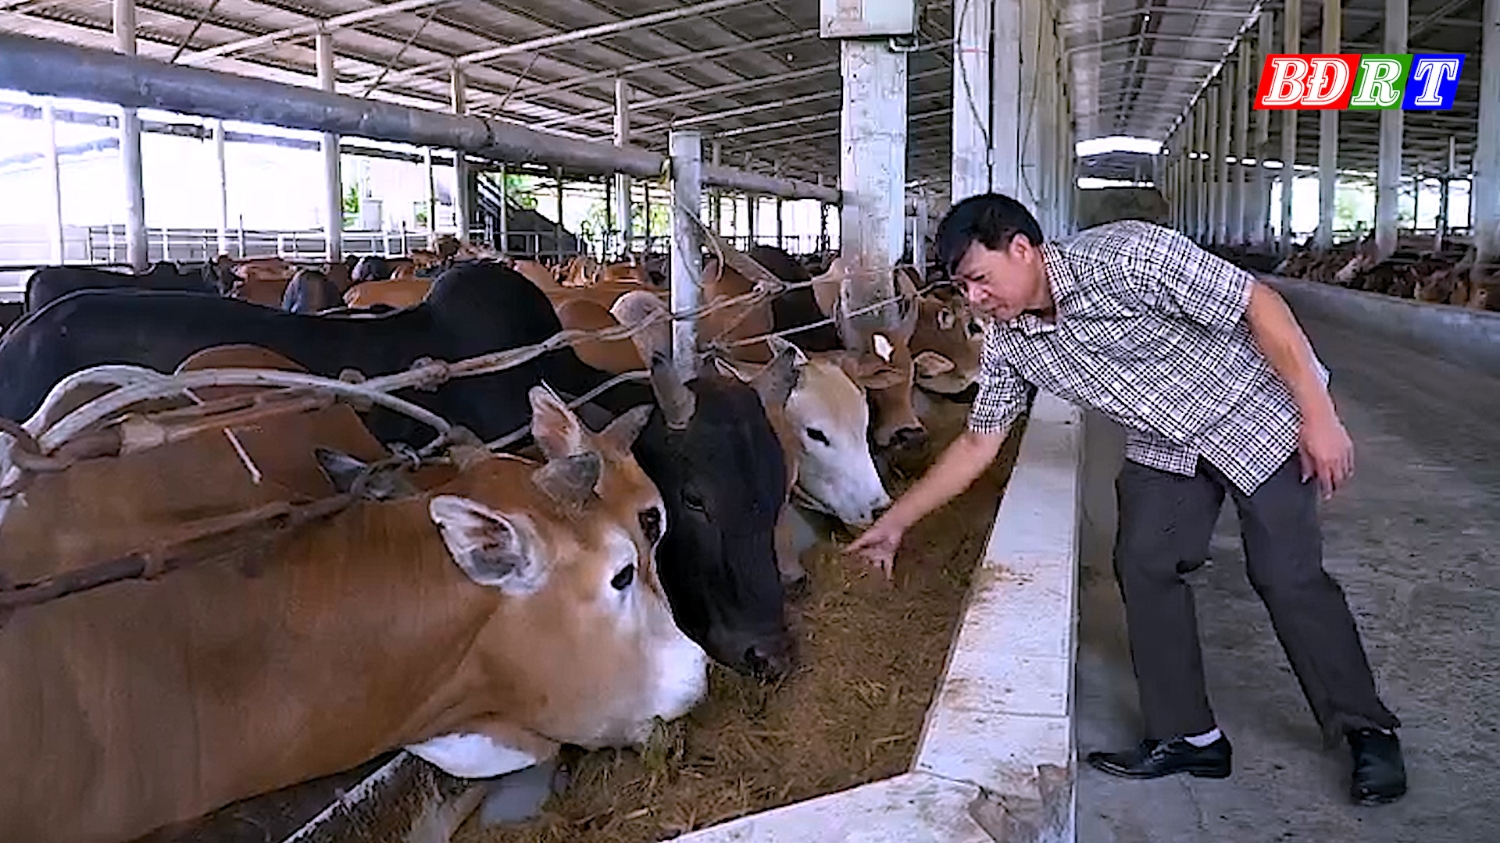 Các giống trâu, bò được nhập về tại đây để chăm sóc, nuôi bằng các chế phẩm sinh